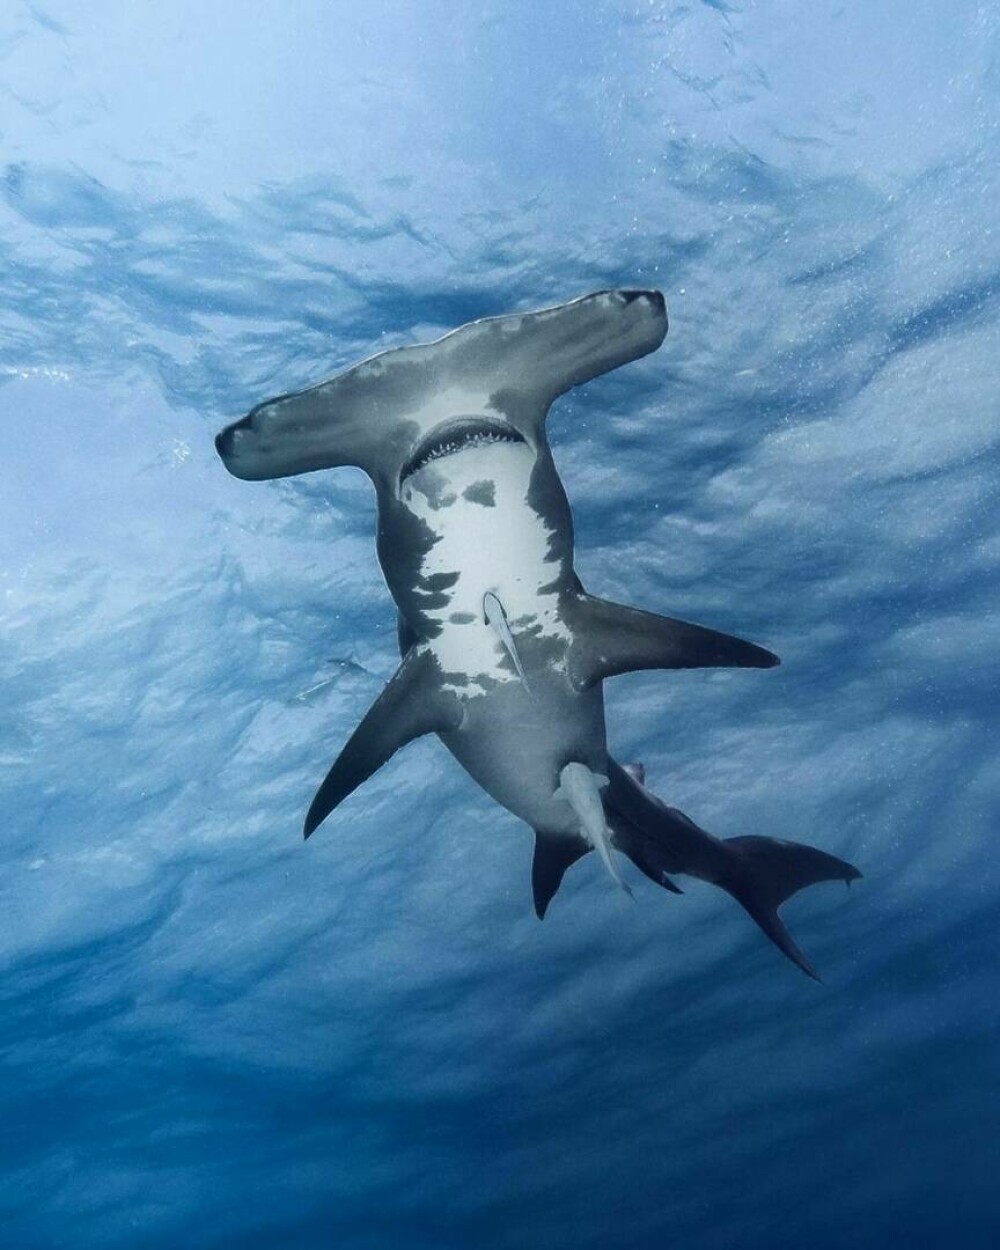 Imagini uimitoare surprinse de supraviețuitorul atacului unui rechin. Fotografiază prădătorii de aproape | GALERIE FOTO - Imaginea 16